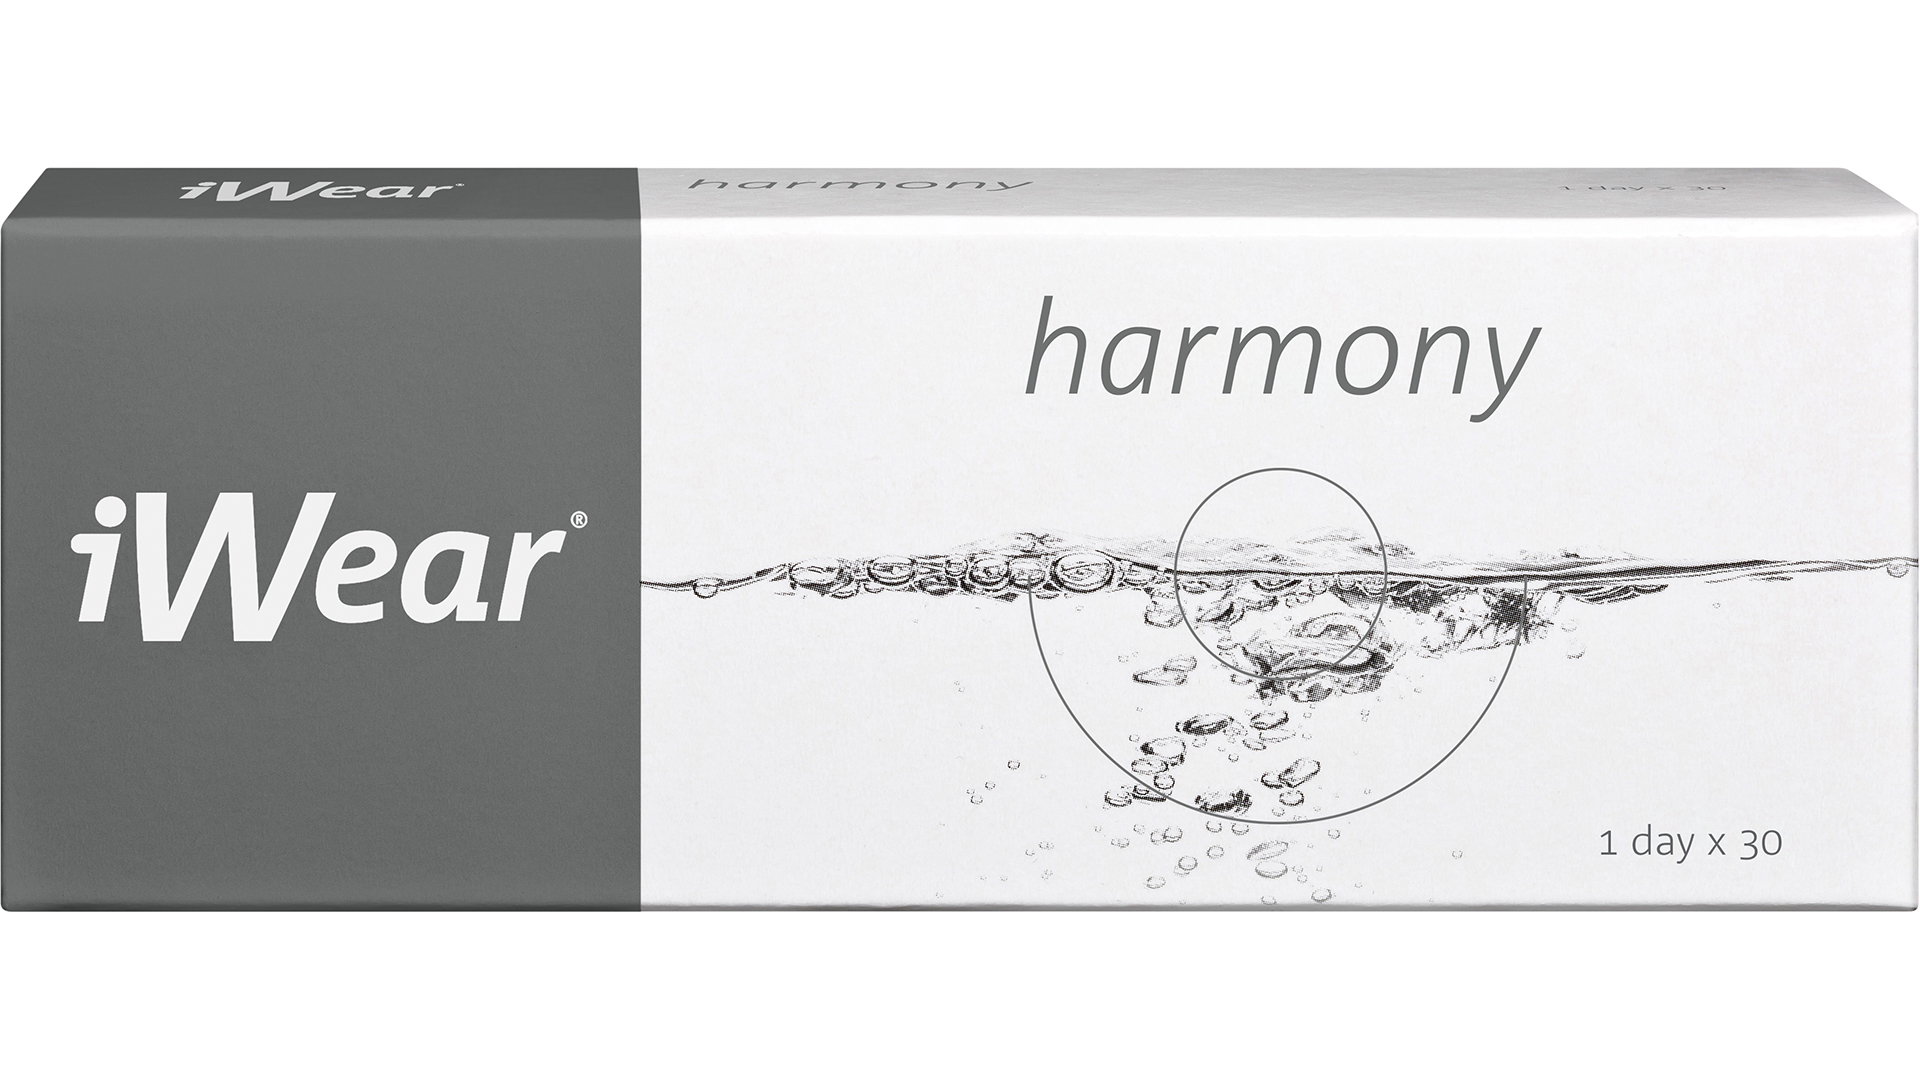 Front iWear harmony